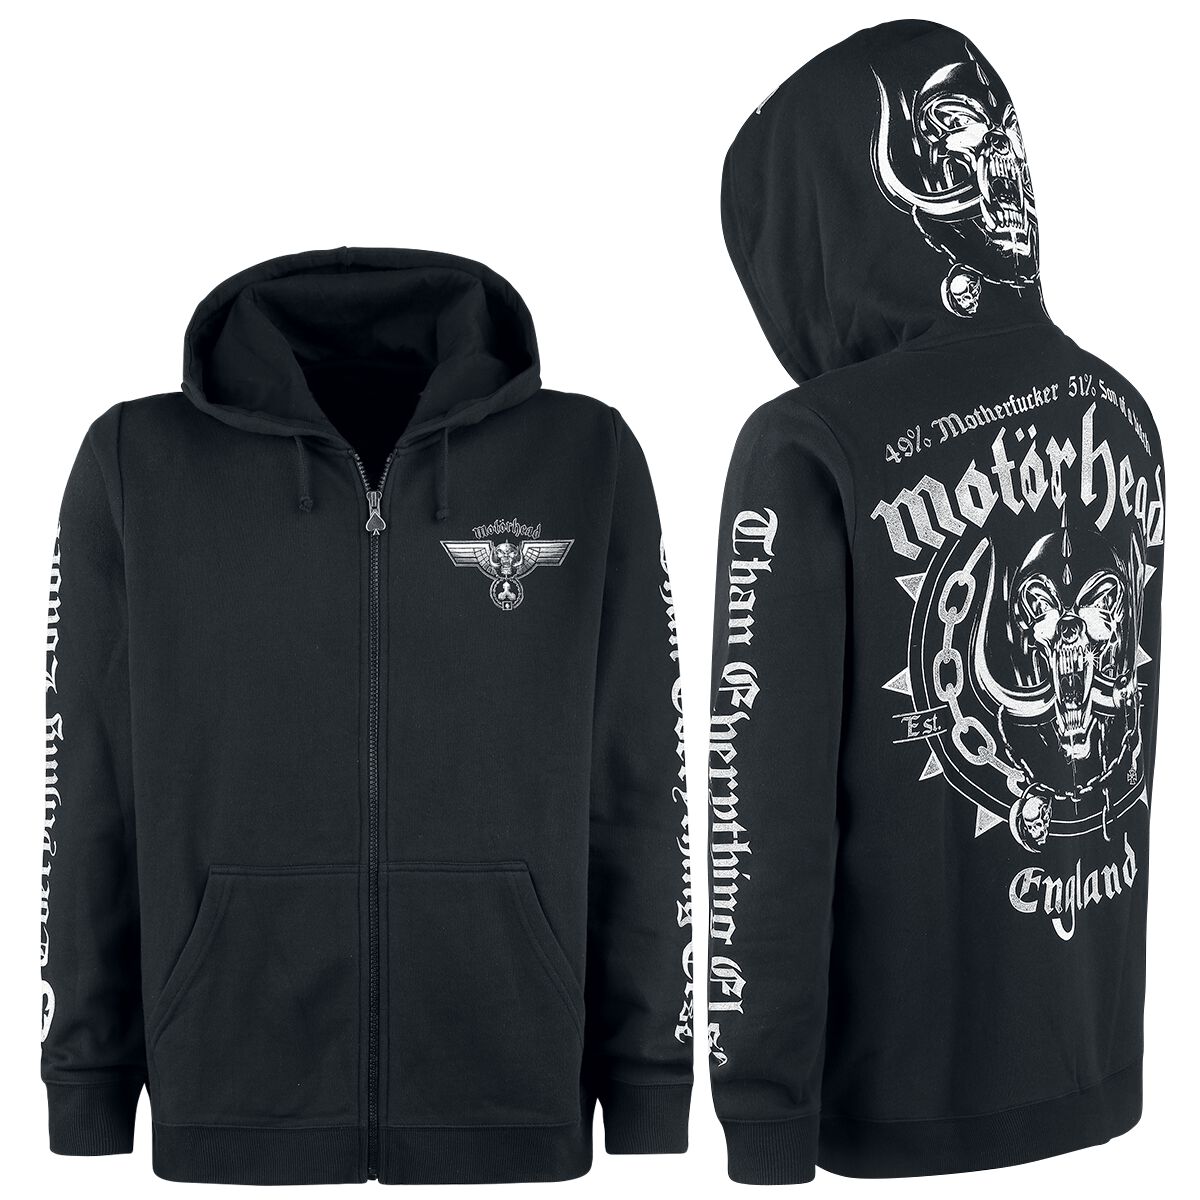 Motörhead Kapuzenjacke - England - M bis 3XL - für Männer - Größe XL - schwarz  - EMP exklusives Merchandise!